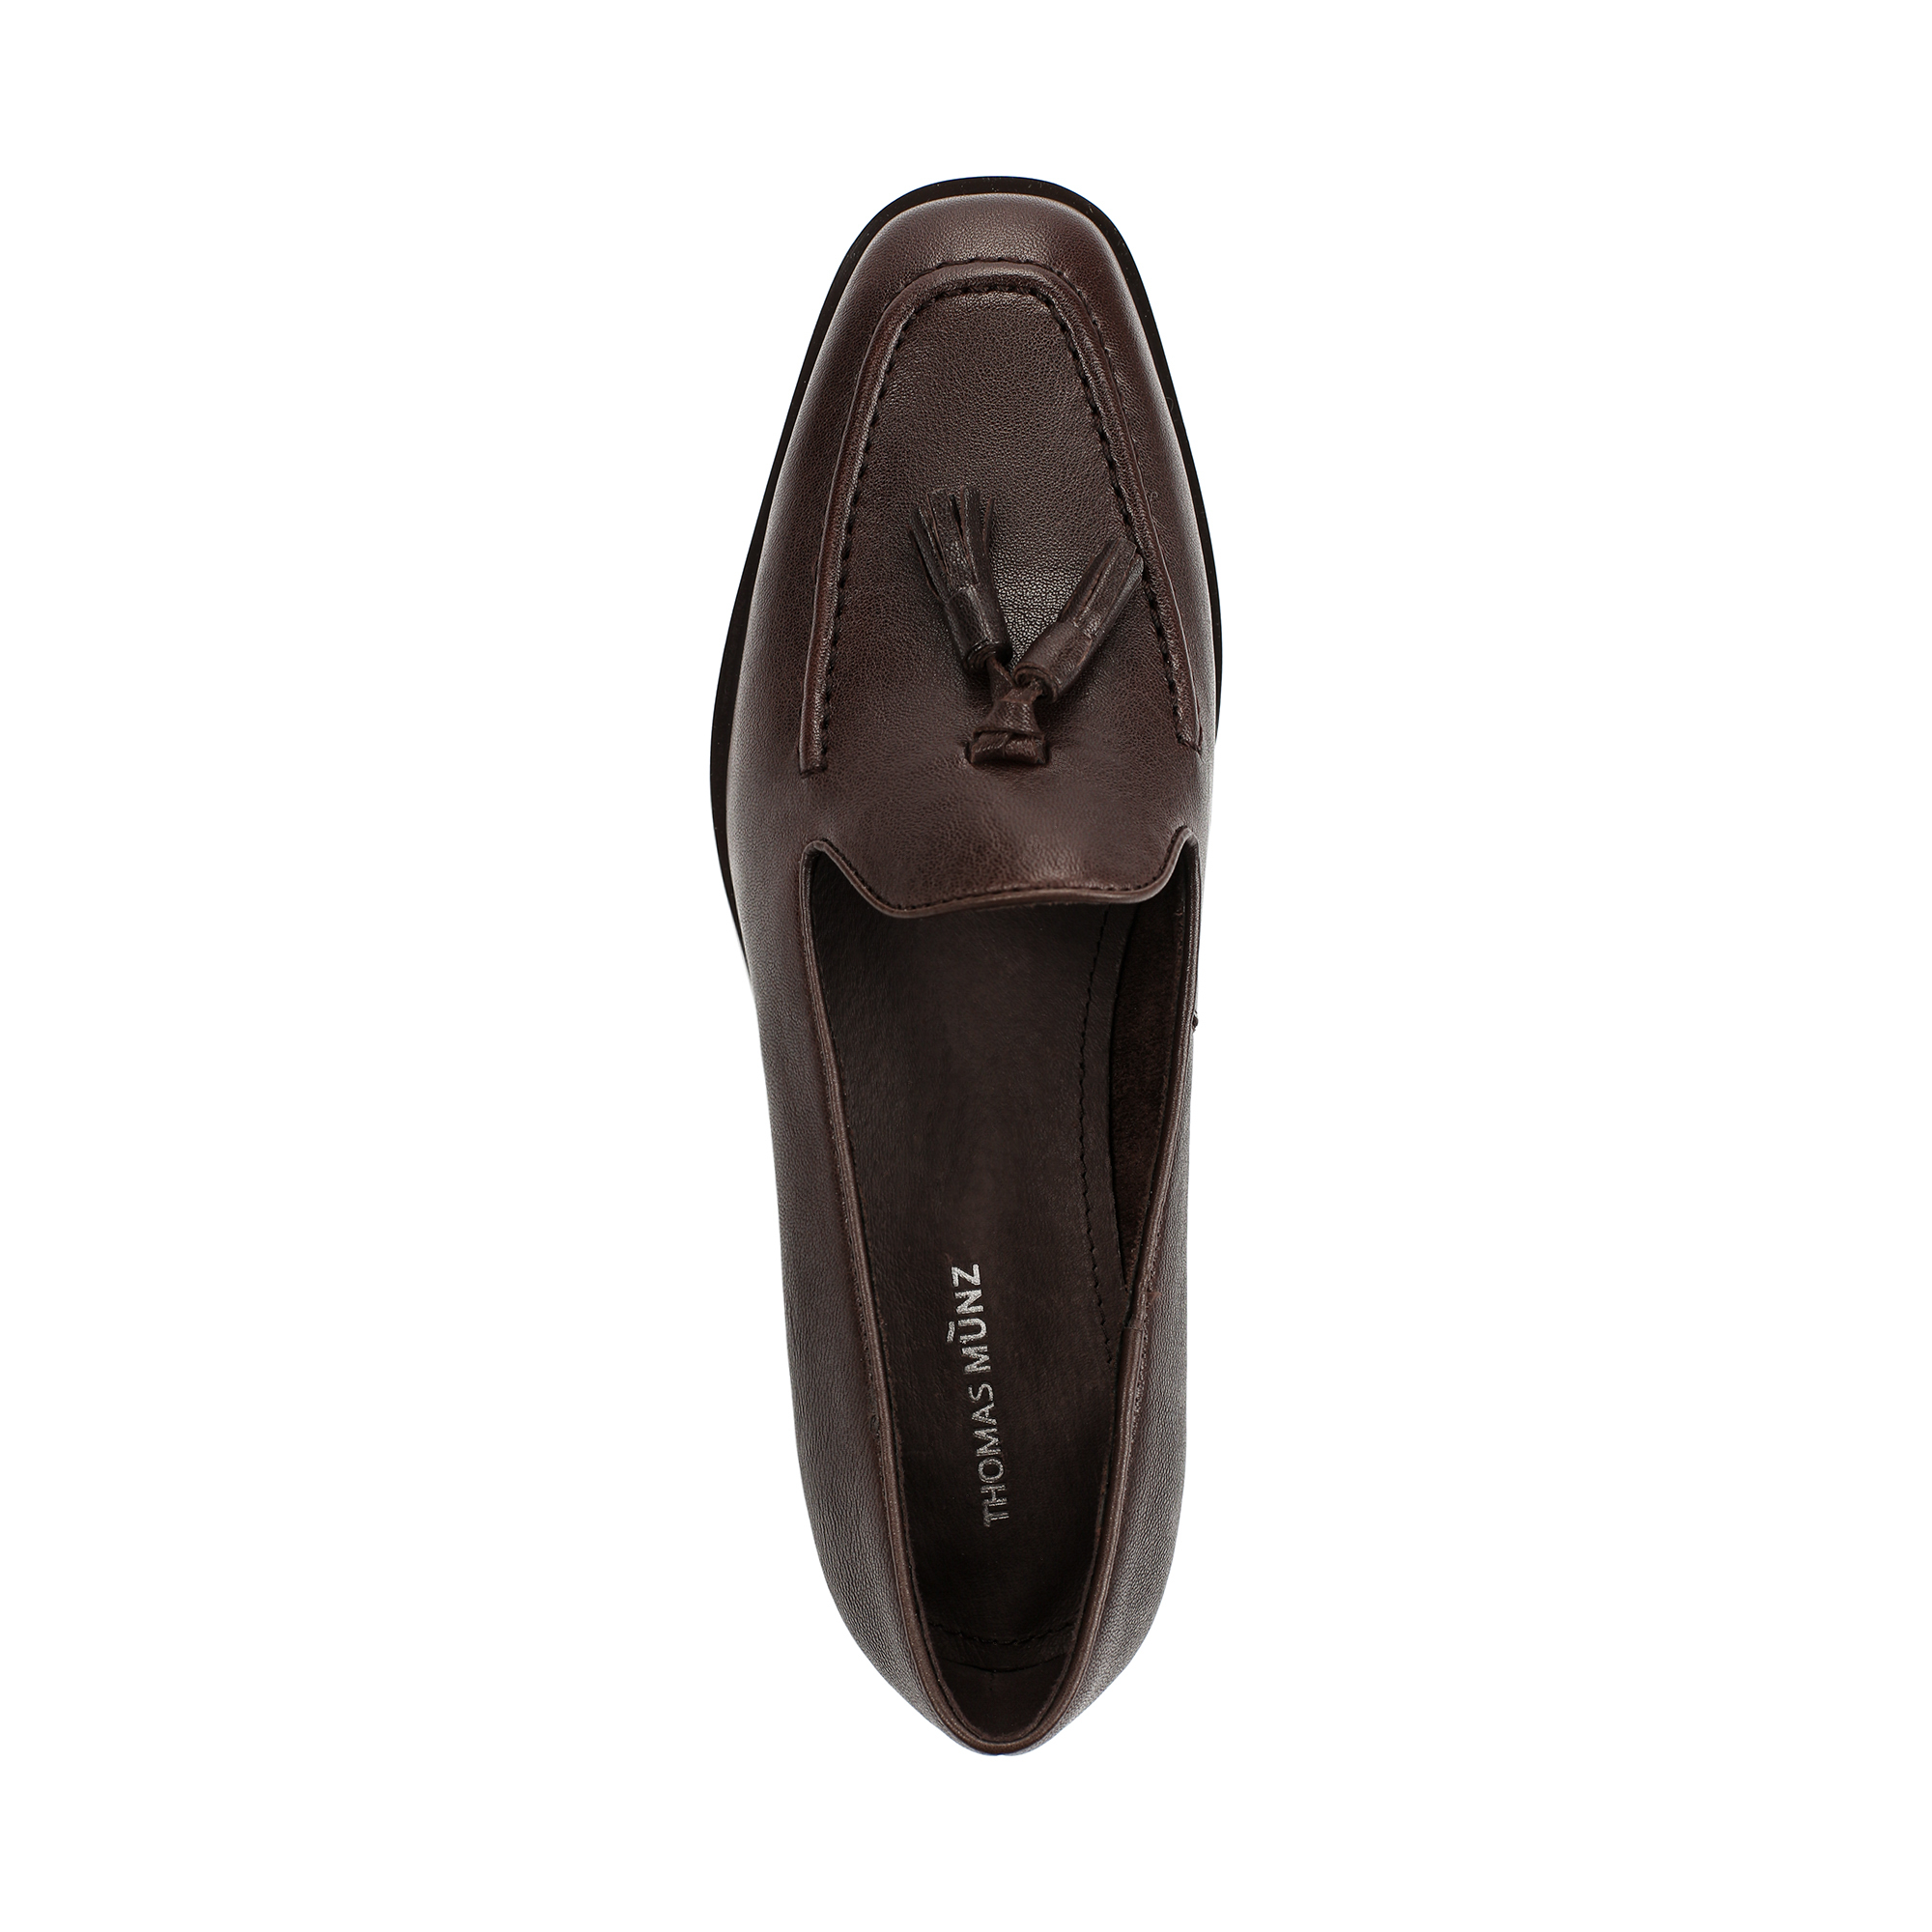 Туфли Thomas Munz 233-879A-2109, цвет темно-коричневый, размер 38 - фото 4